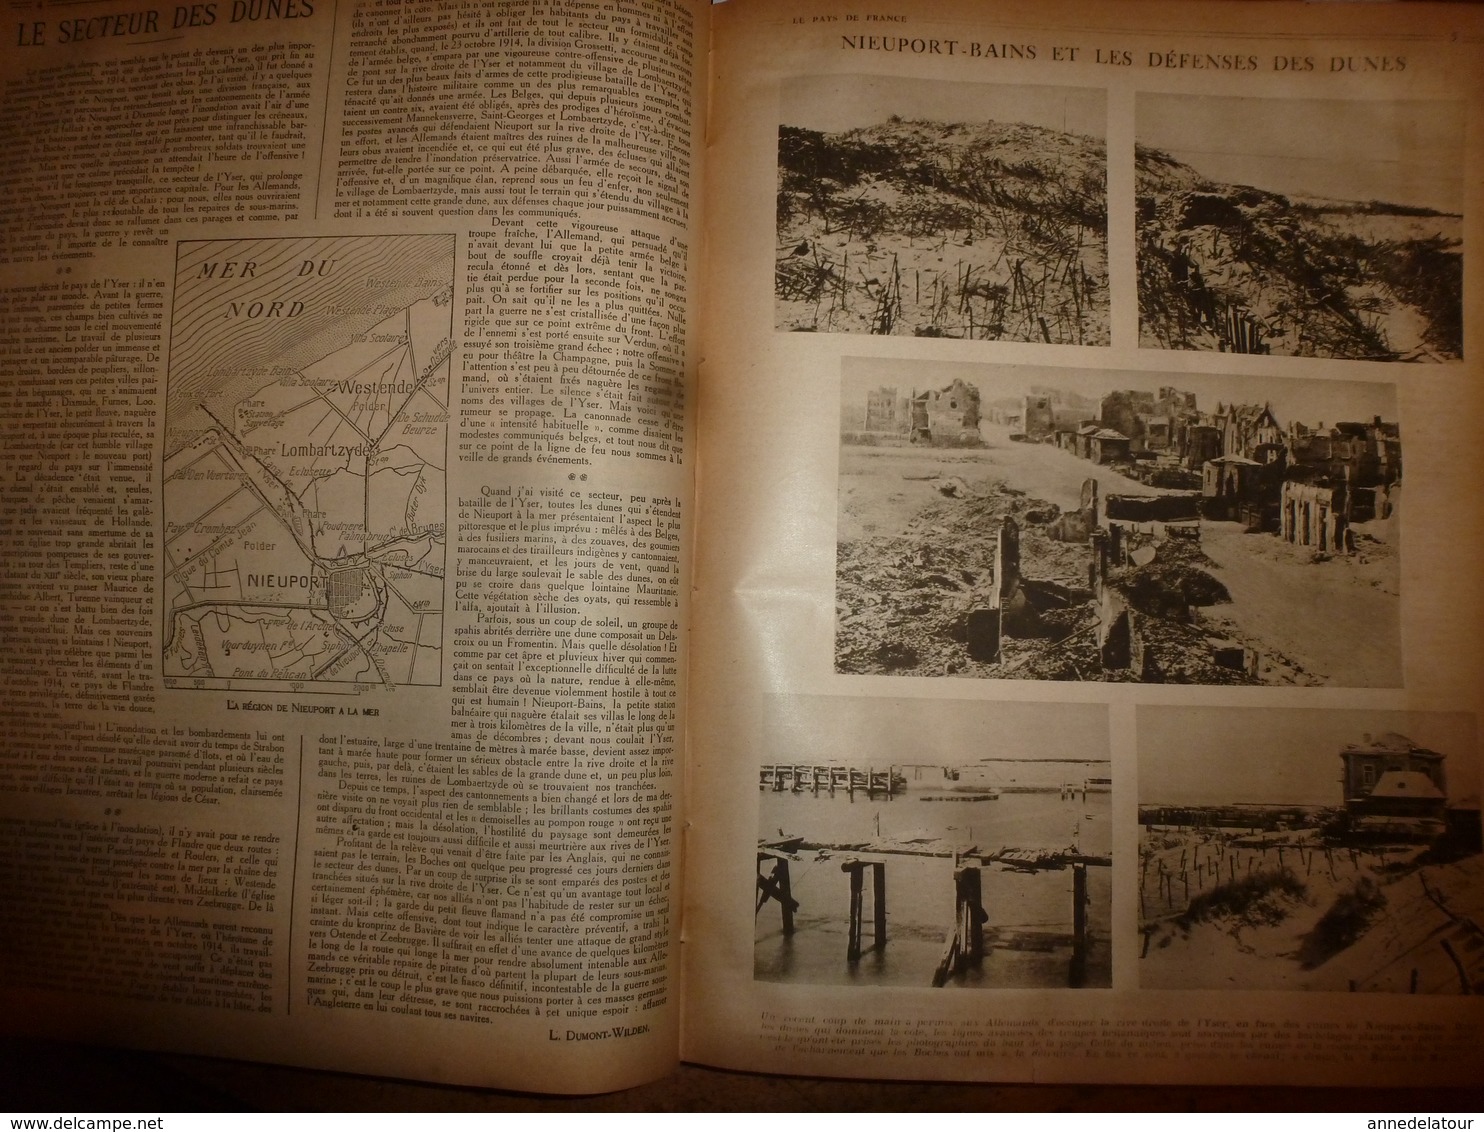 1917-1918 LPDF Important documentaire texte-photos concernant la BELGIQUE sur cette période de la 1ère GUERRE MONDIALE